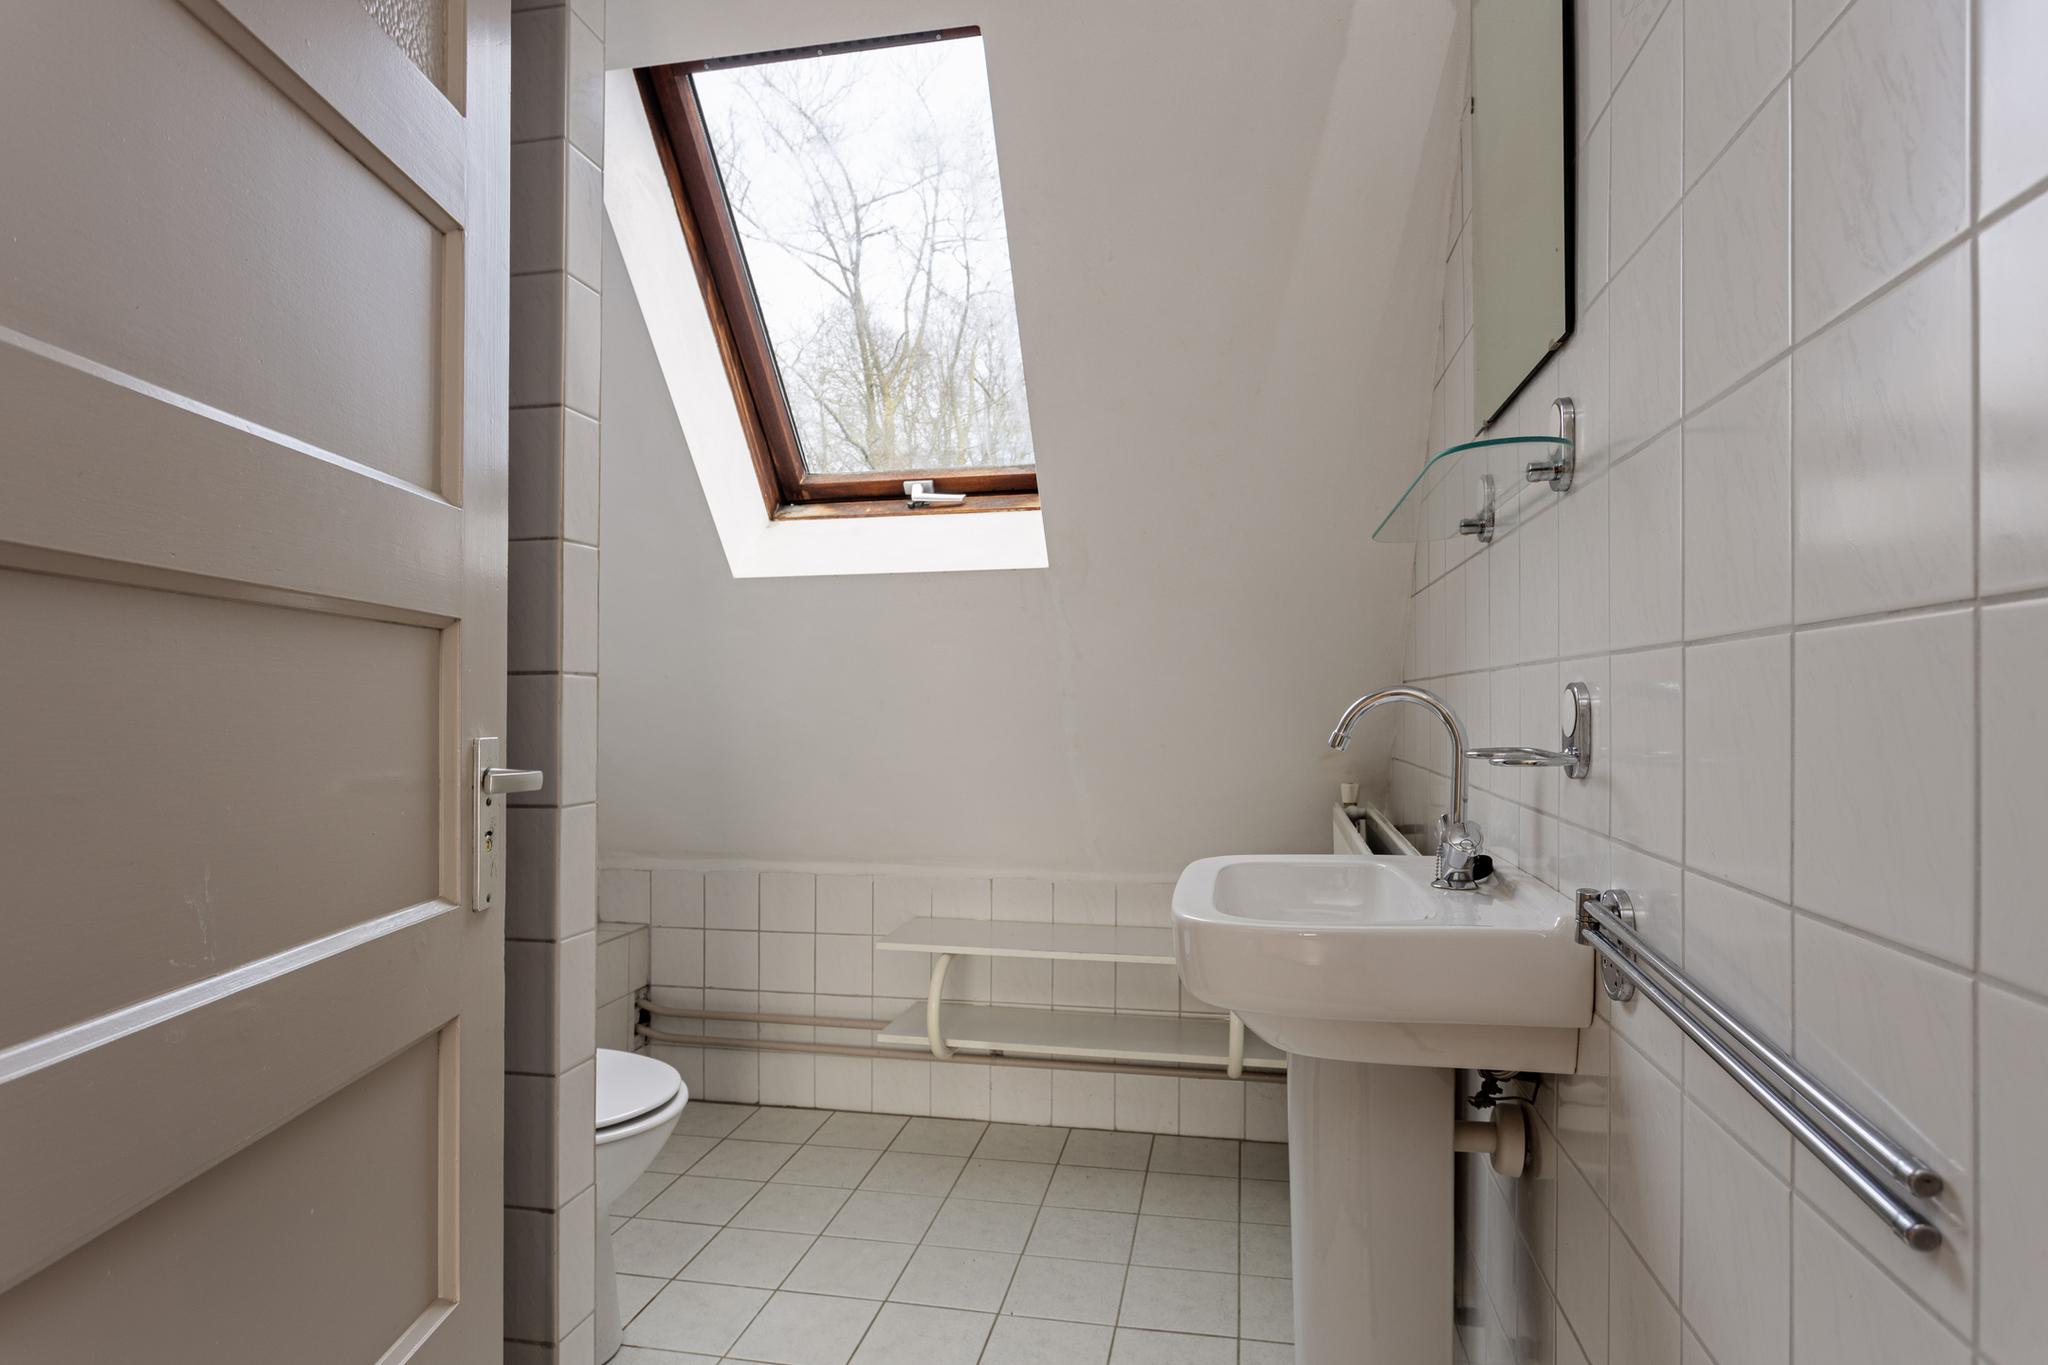 Badkamer vanaf deur, Zijlstraat 16 Heeswijk-dinther